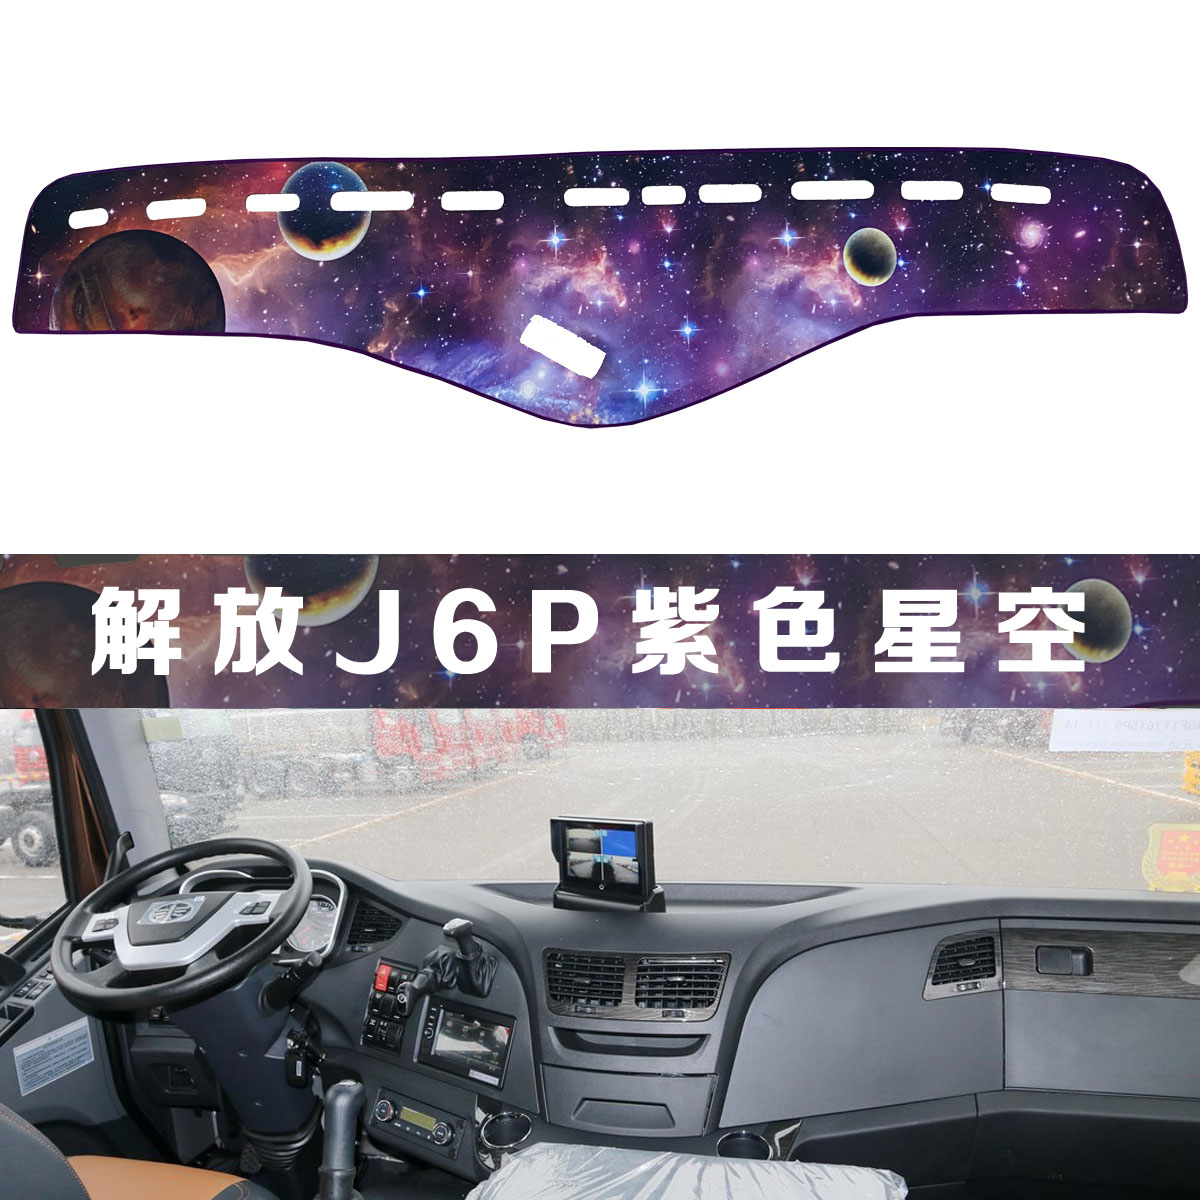 货车解放j6p2.0+避光垫车用品驾驶室内饰配件装饰仪表台防晒垫